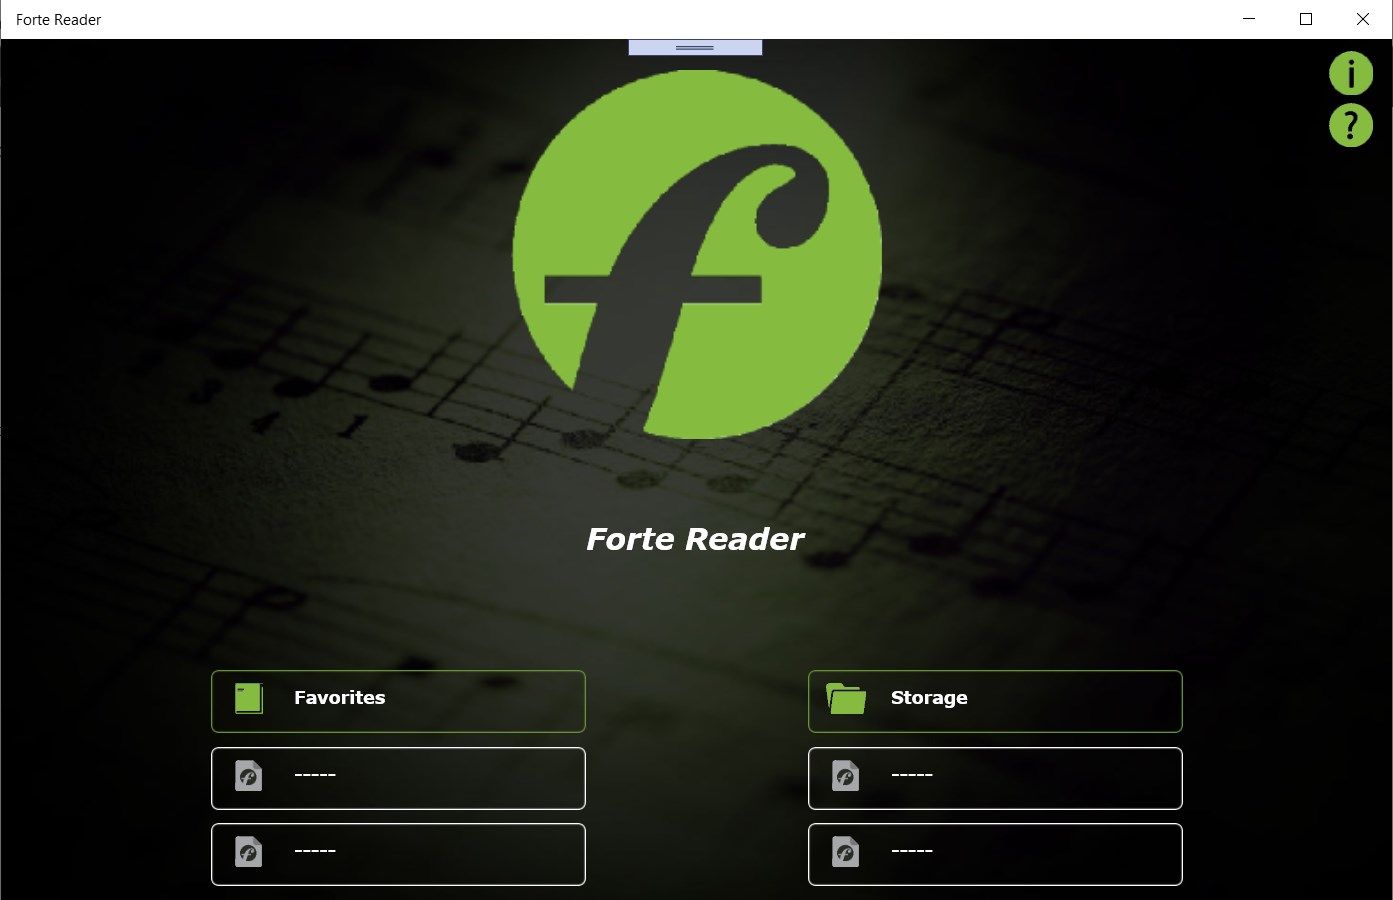 Forte Reader